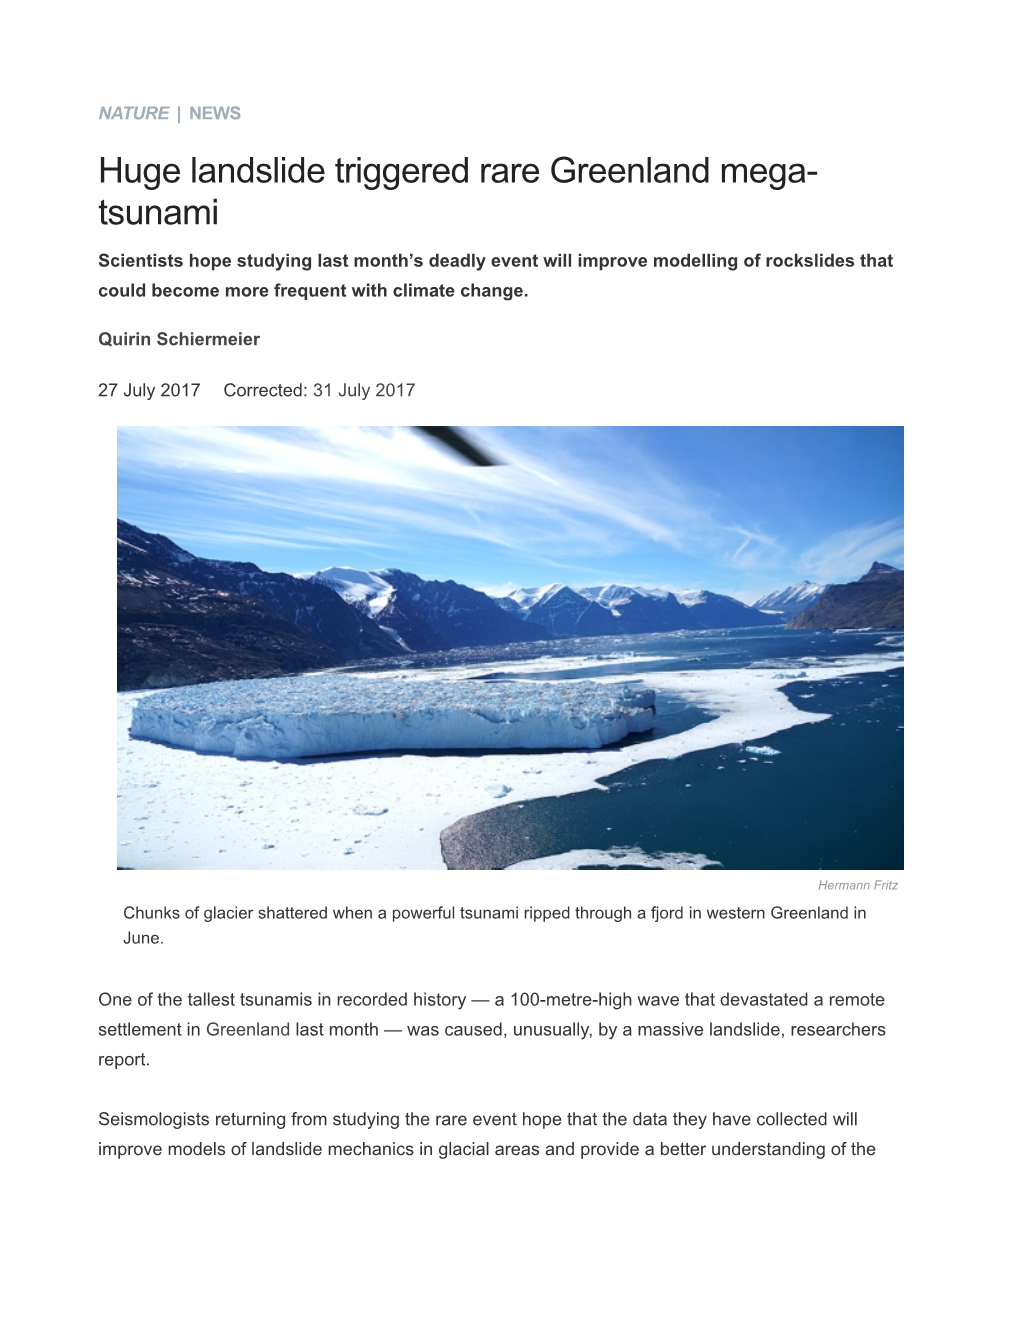 Huge Landslide Triggered Rare Greenland Mega-Tsunami : Nature News & Comment